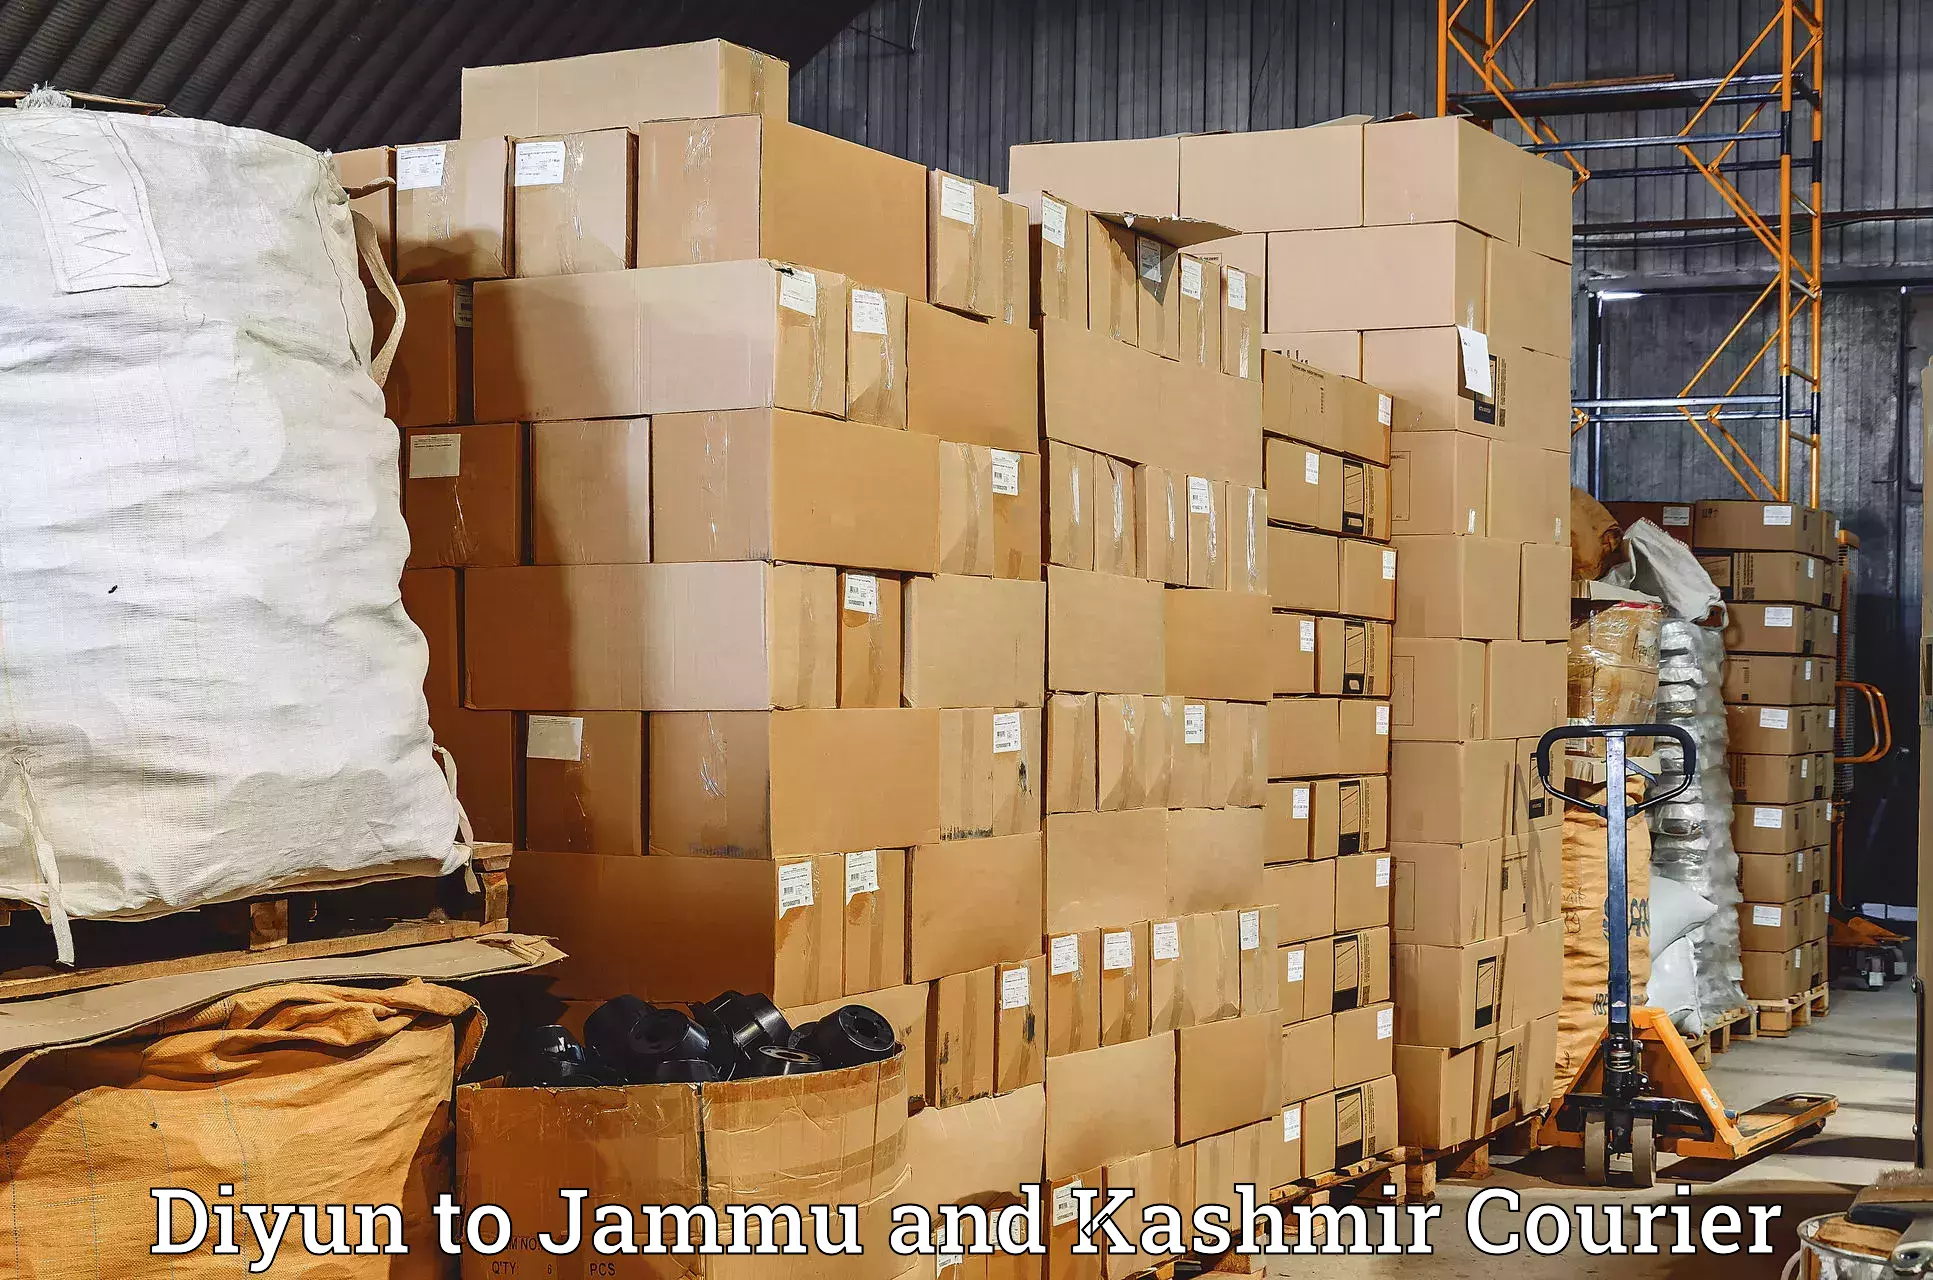 State-of-the-art courier technology Diyun to Srinagar Kashmir